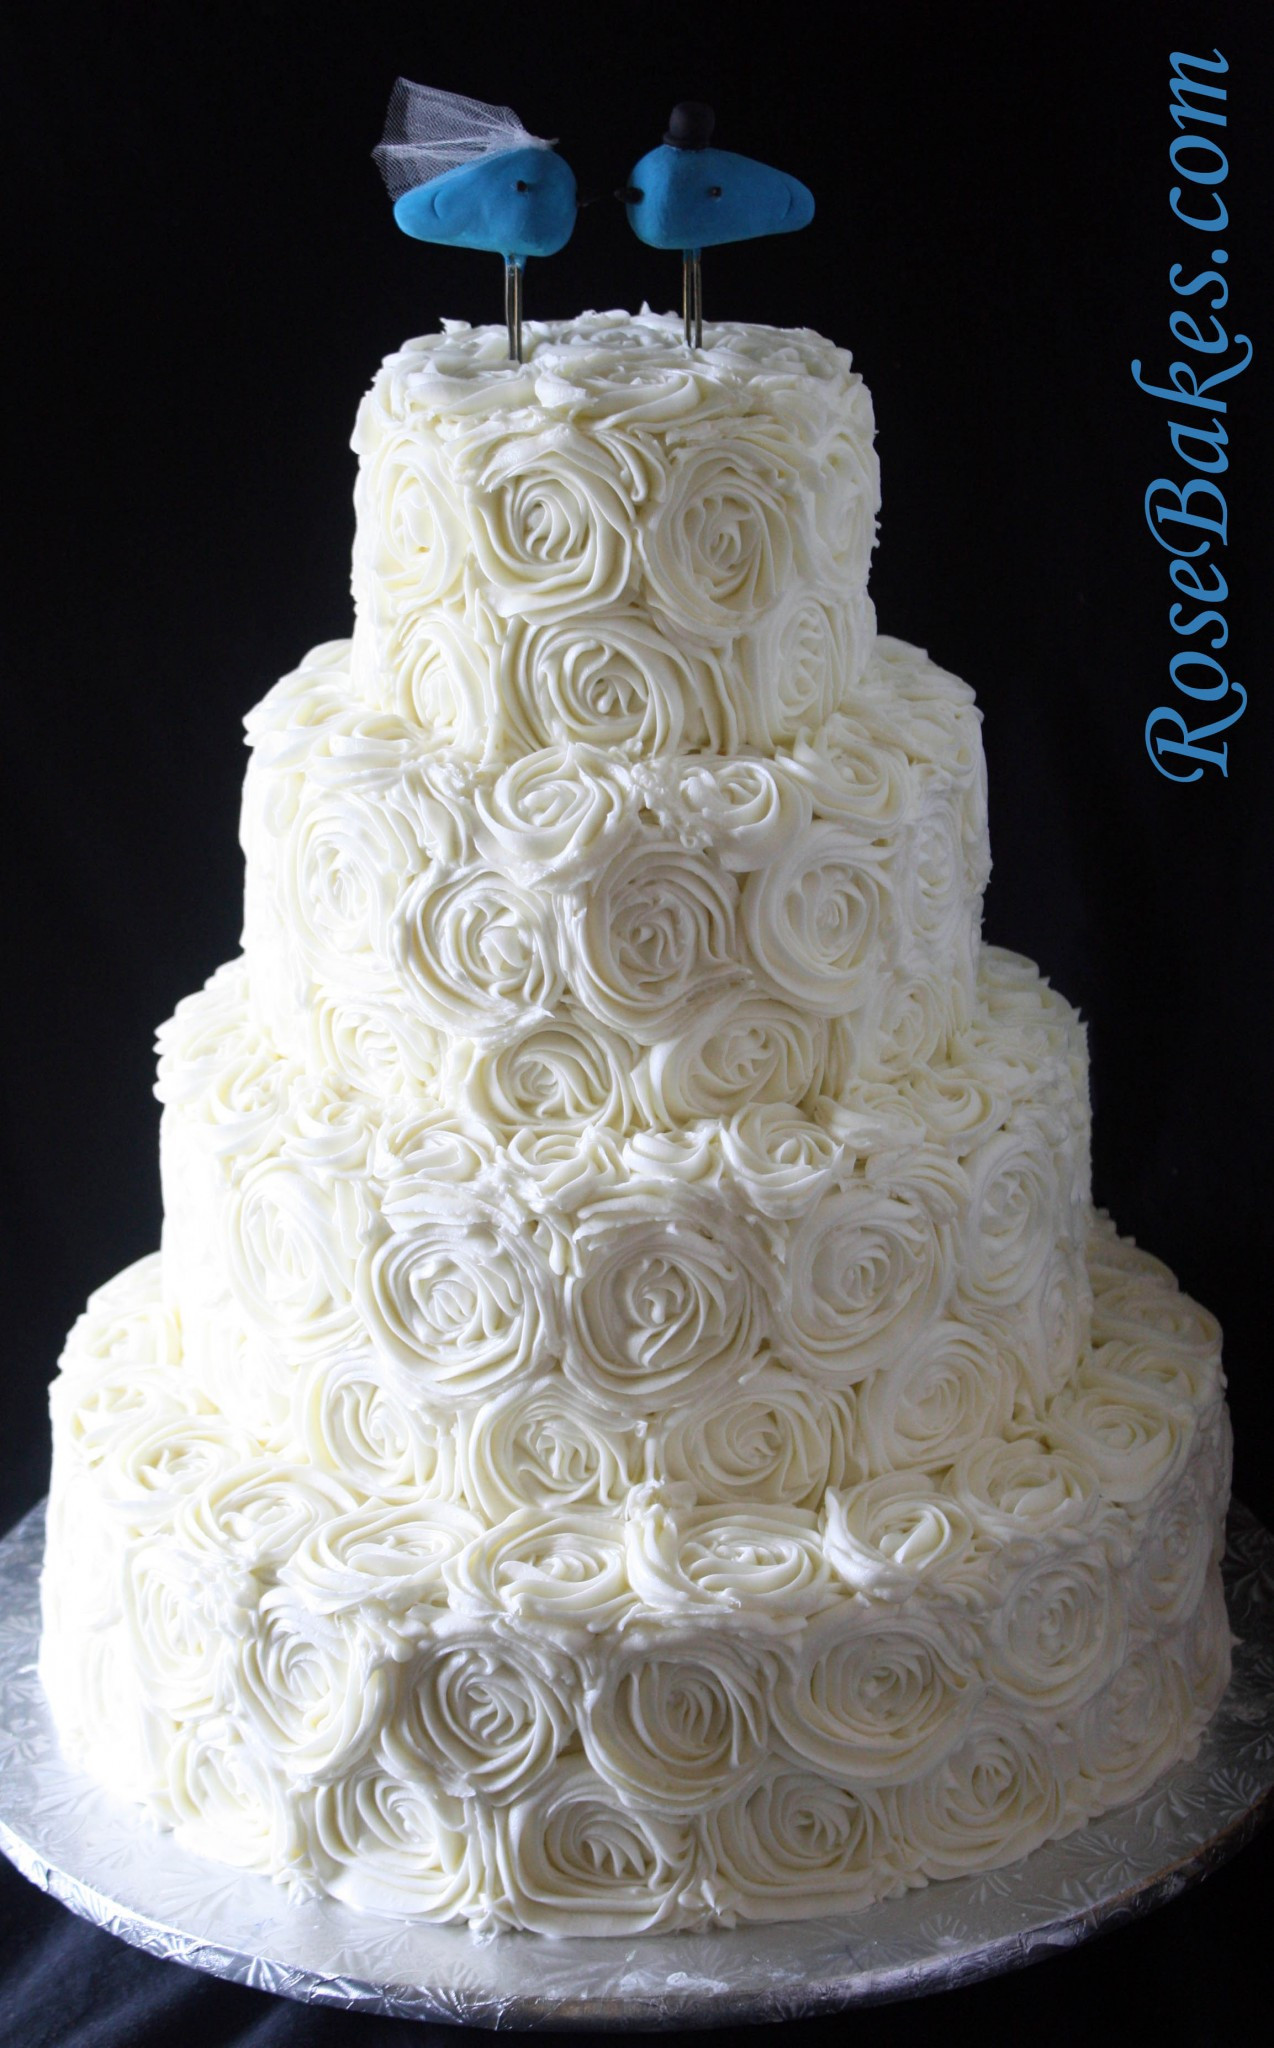 Wedding Cakes Butter Cream
 Ivory Buttercream Roses Wedding Cake with LoveBirds Cake